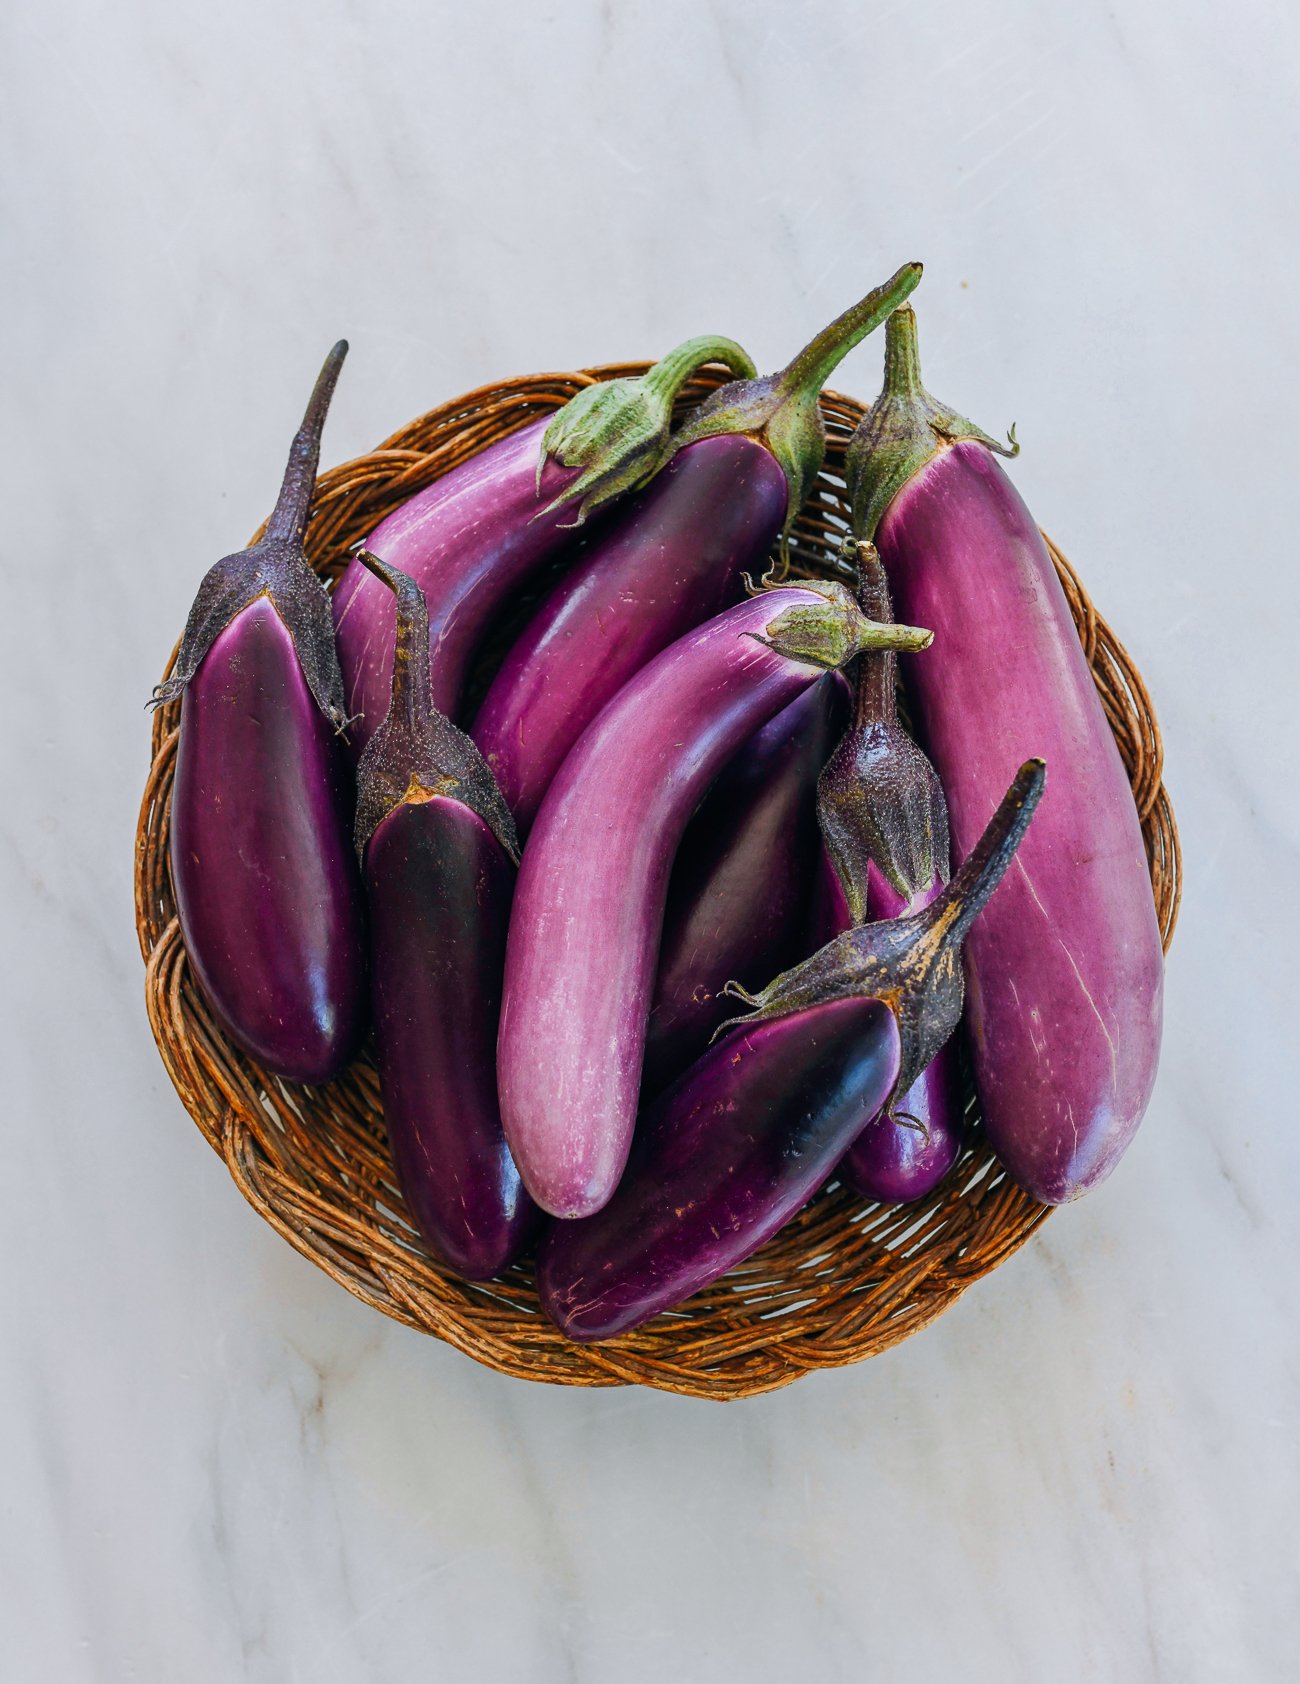 Basket of Chinese eggplants